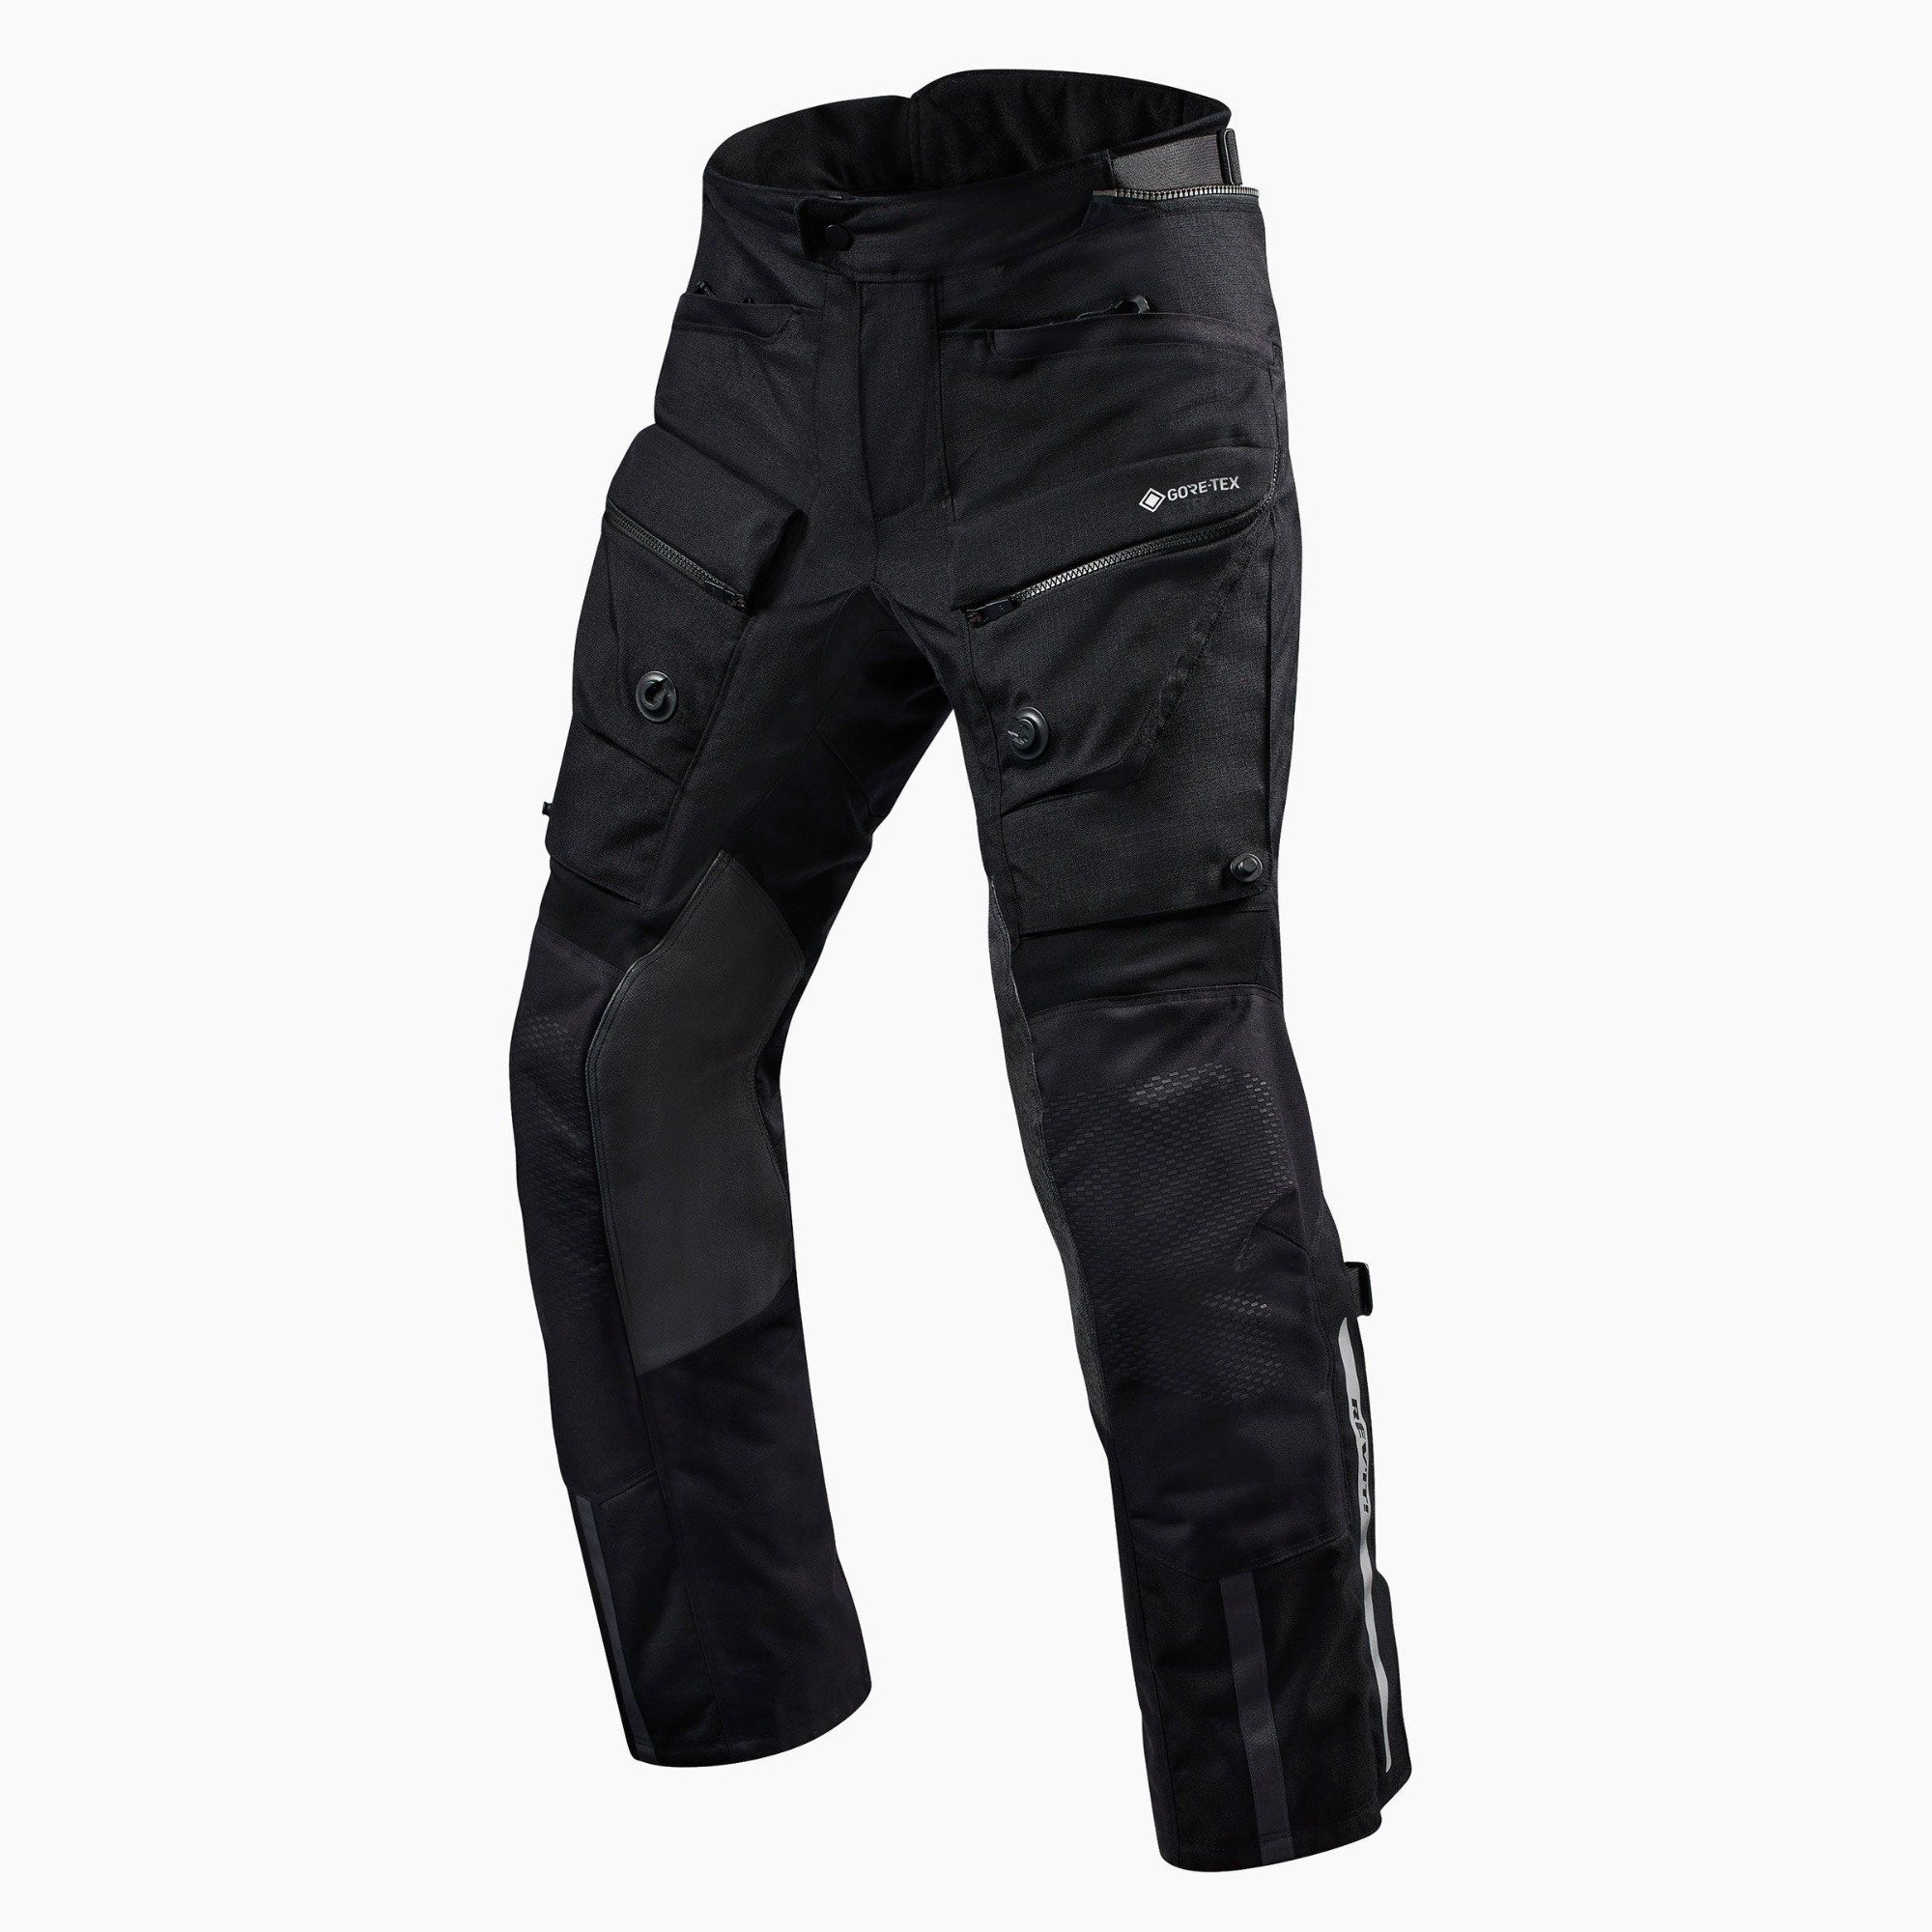 Image of REV'IT! Trousers Defender 3 GTX Black Standard Motorcycle Pants Size M EN